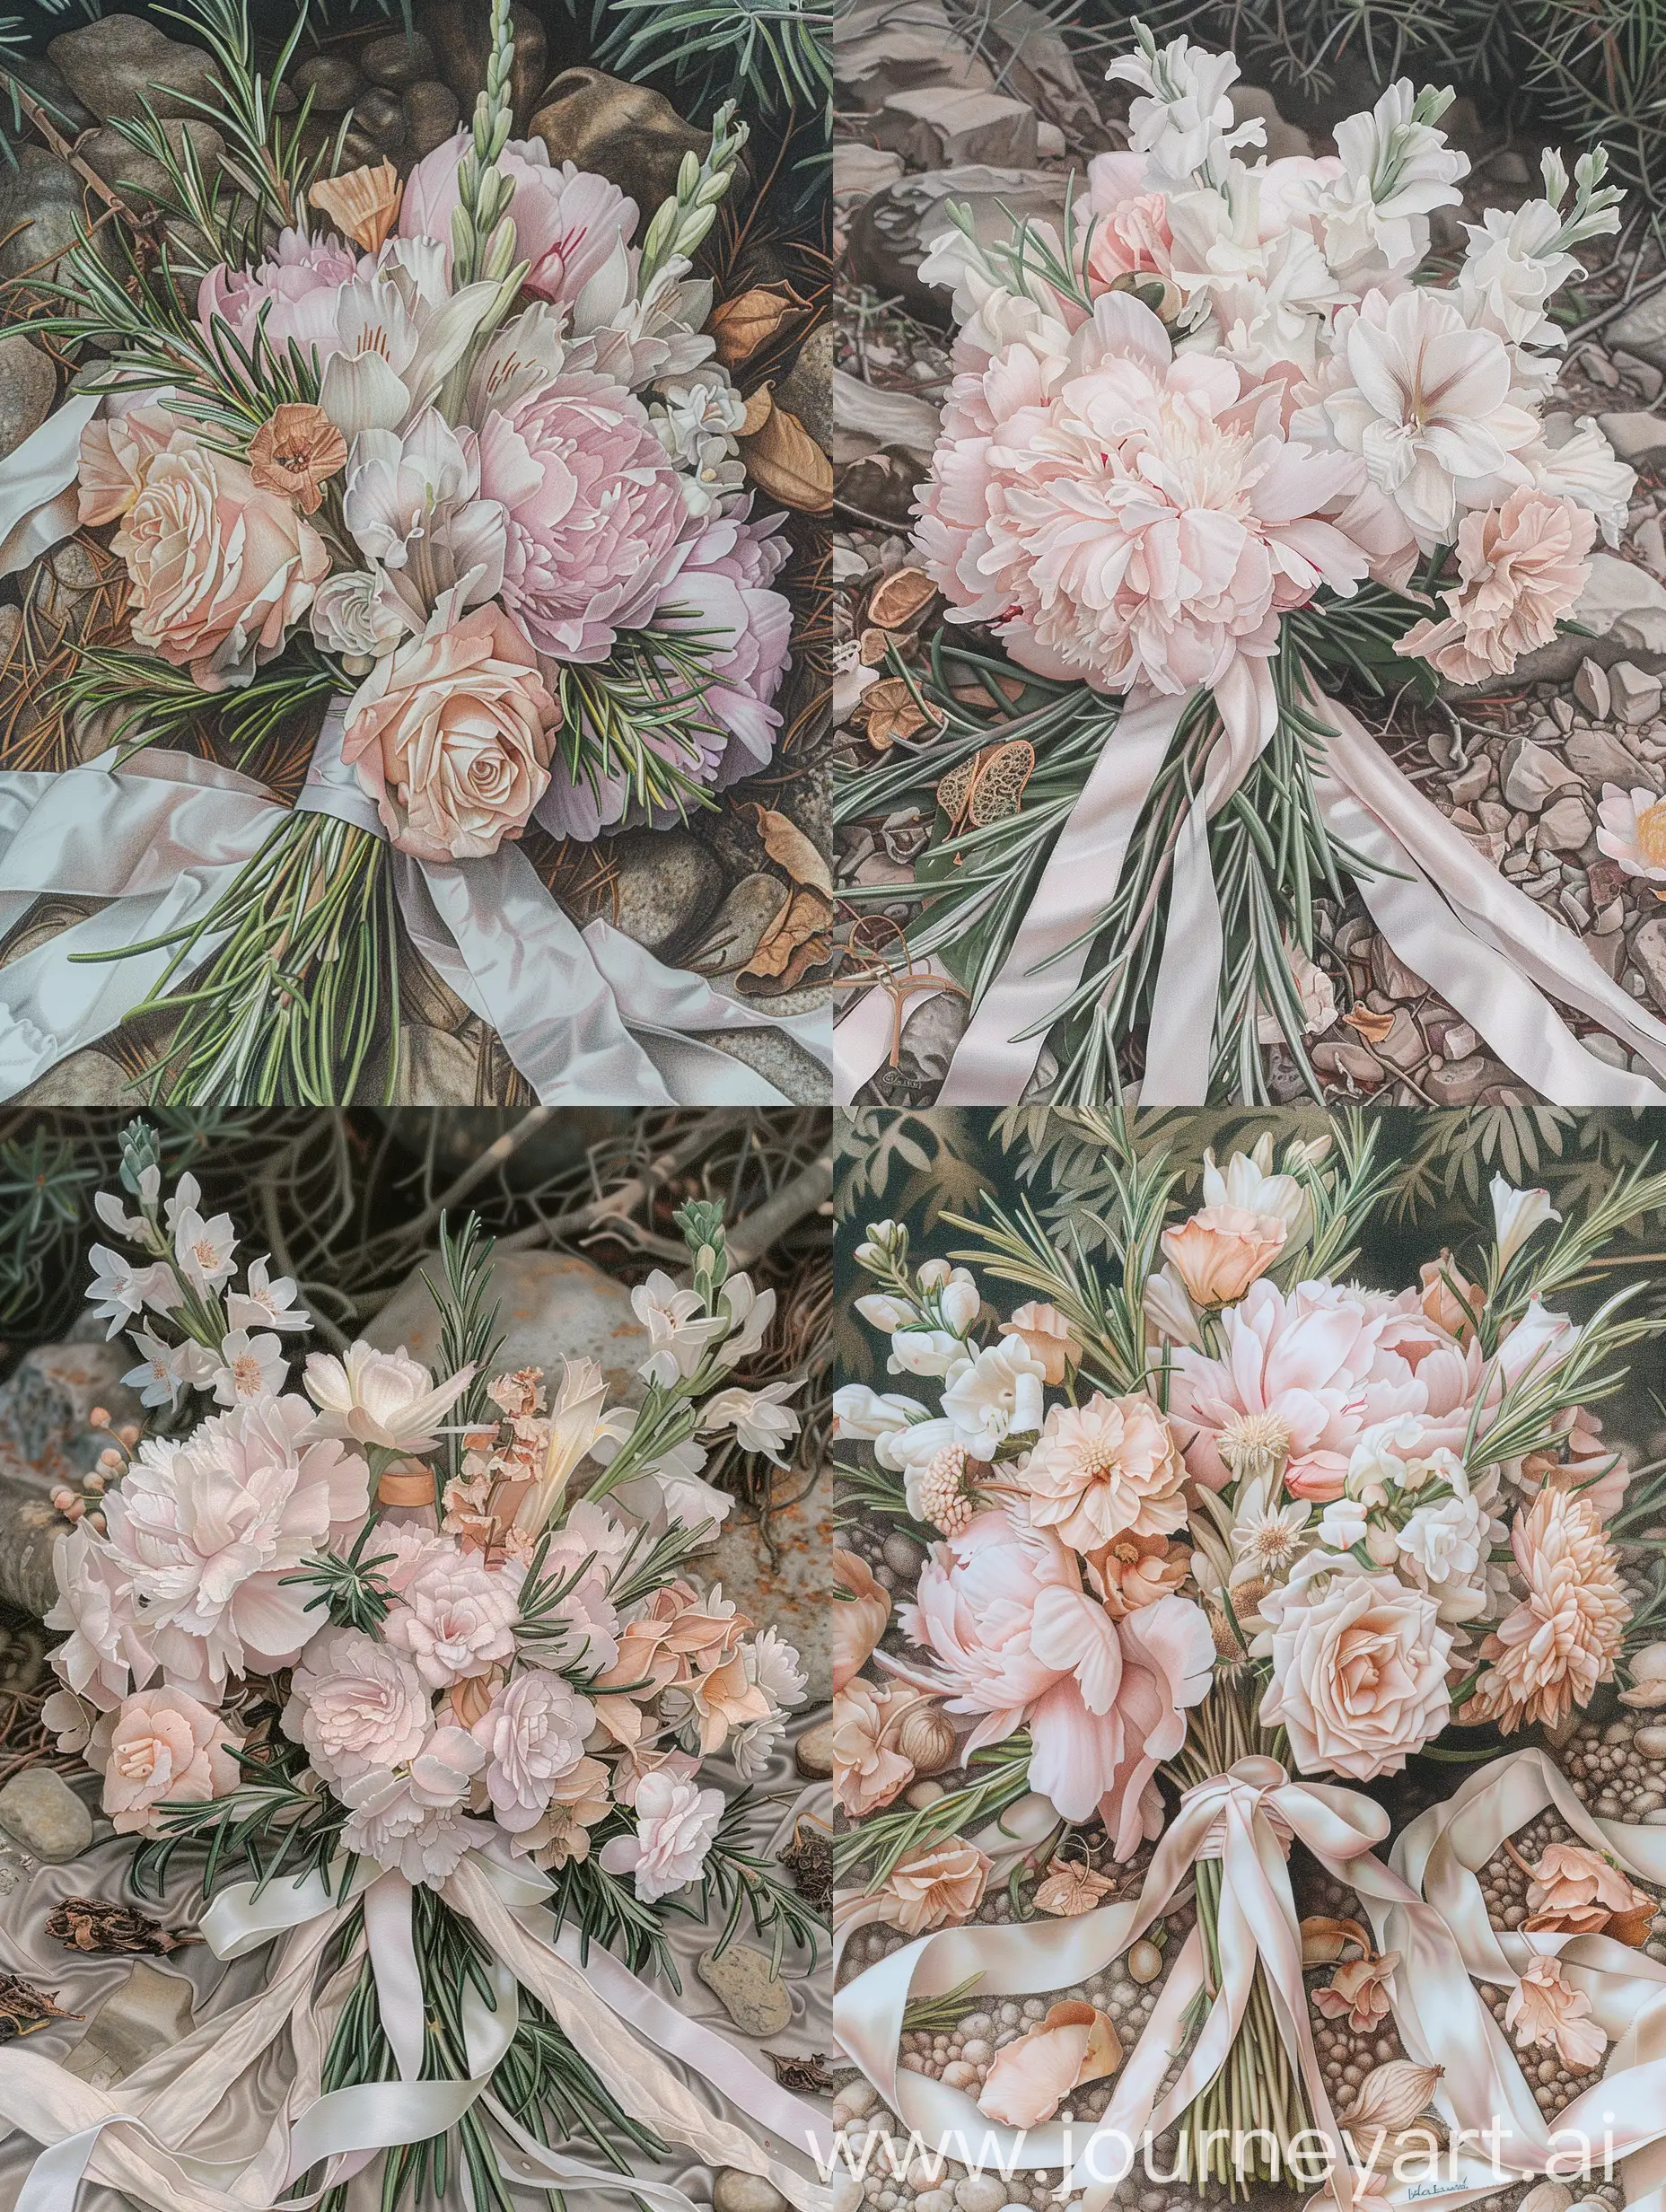 скетч,ботаническая иллюстрация на белом фоне,рисунок карандашами, много оттенков розового, живопись акрилом, крупным планом,самый нежный букет из листьев розмарина,бледно розовых пионов,белых гладиолусов+ нежной эустомы+сухоцветы,очень бледная пастель,на лесном фоне, жемчужный блеск, естественные пастельные оттенки, лежат на камнях,атласные ленты, винтажные вещи,барокко, нежная чувственность, филигранная прорисовка,высокая детализация, эстетика, стильно